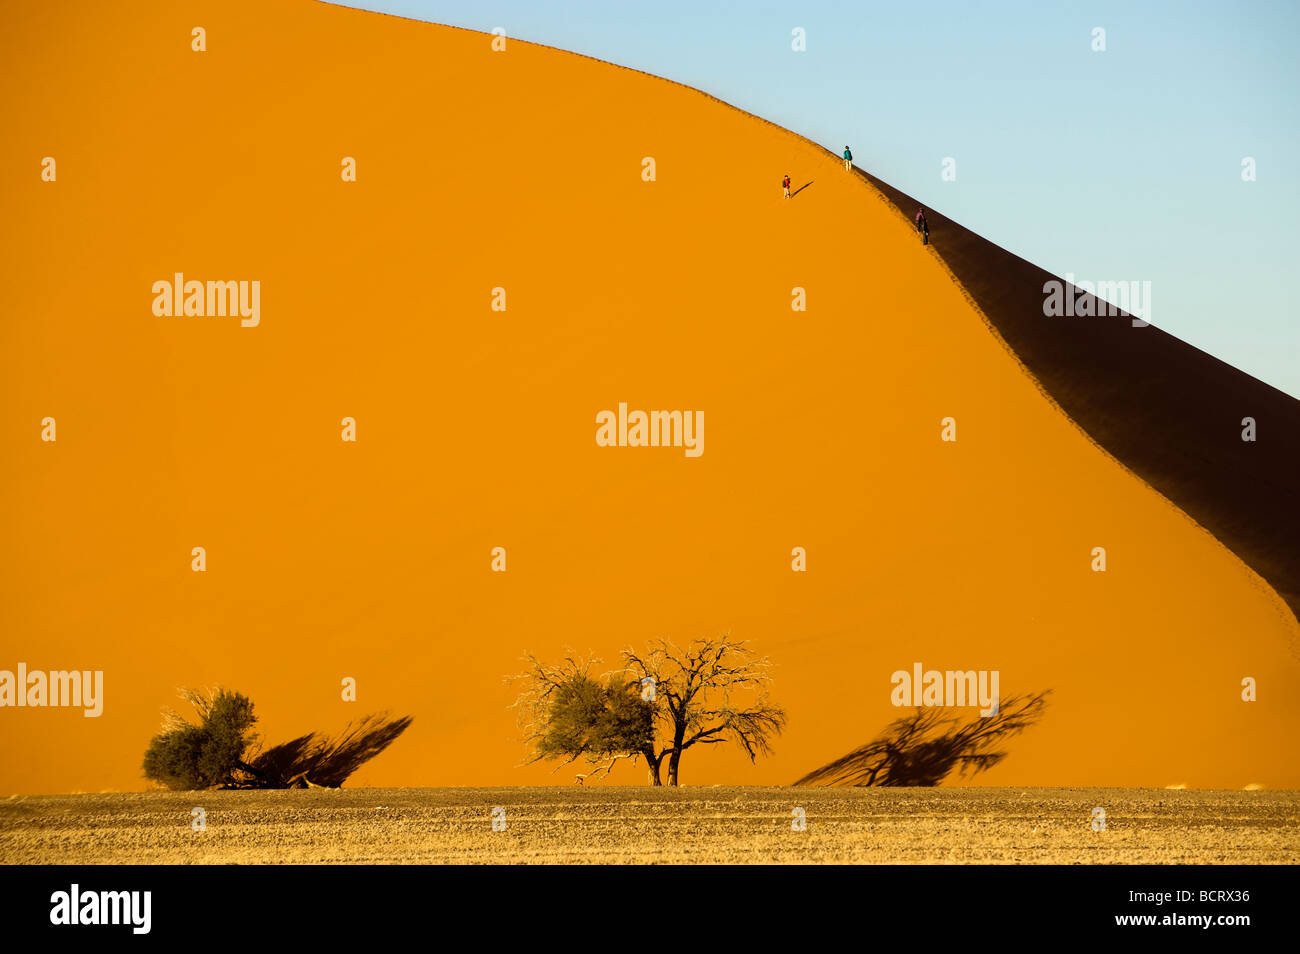 Afrique du Sud Namibie Sossusvlei sable de dune bush sec arbre ombre séché forme Vlei désert désert désert rude désert froid des déchets Banque D'Images